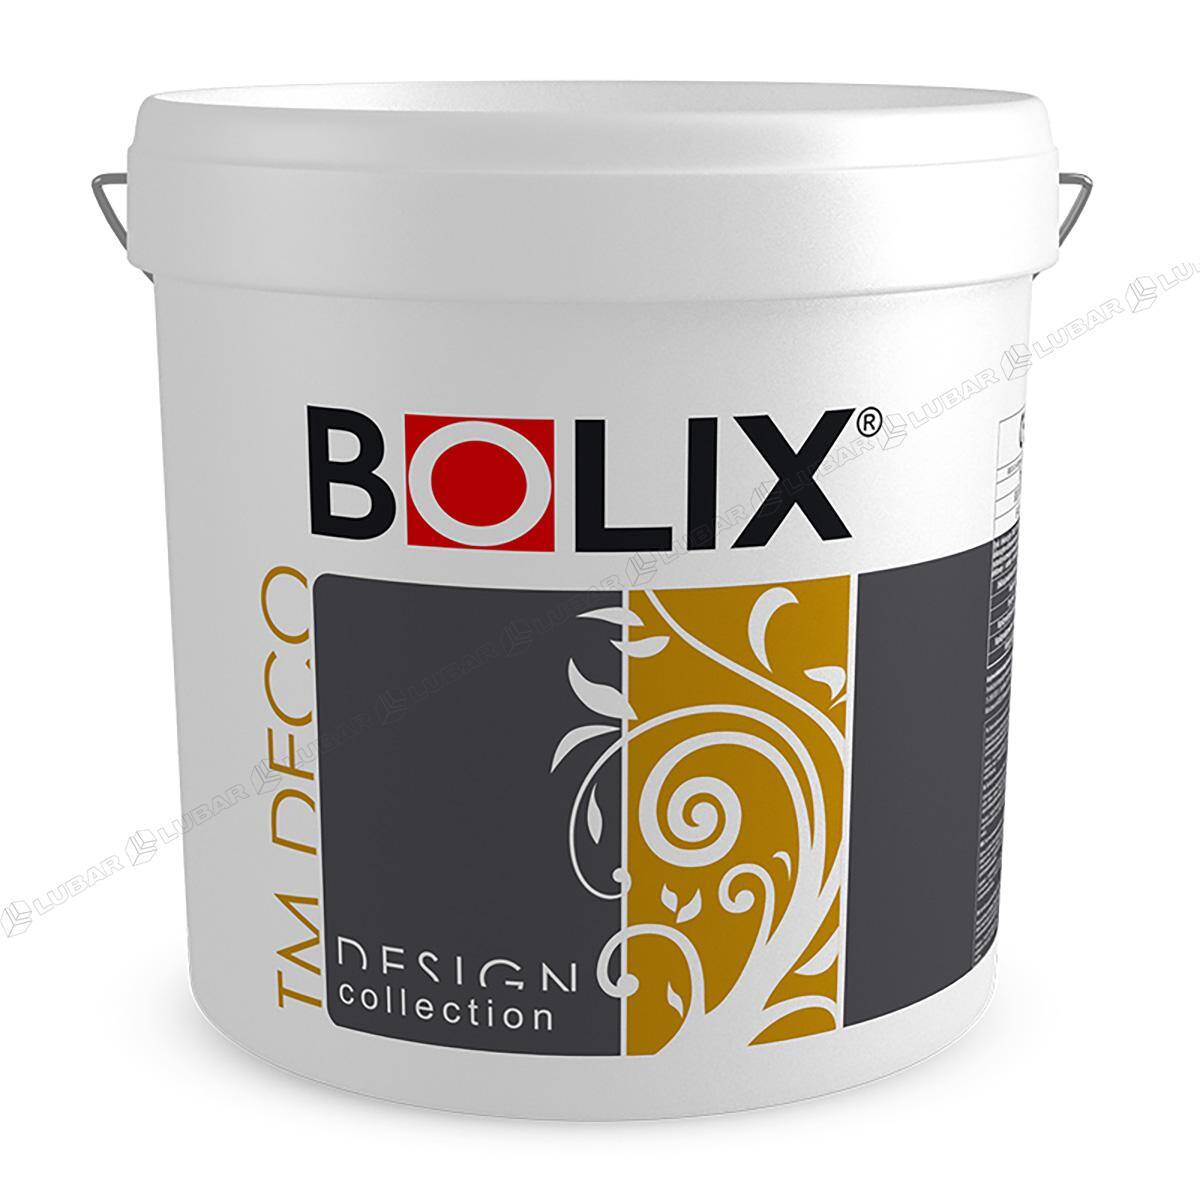 BOLIX TM DECO Tynk dekoracyjny z miką 25 kg SAND HILL TMD44